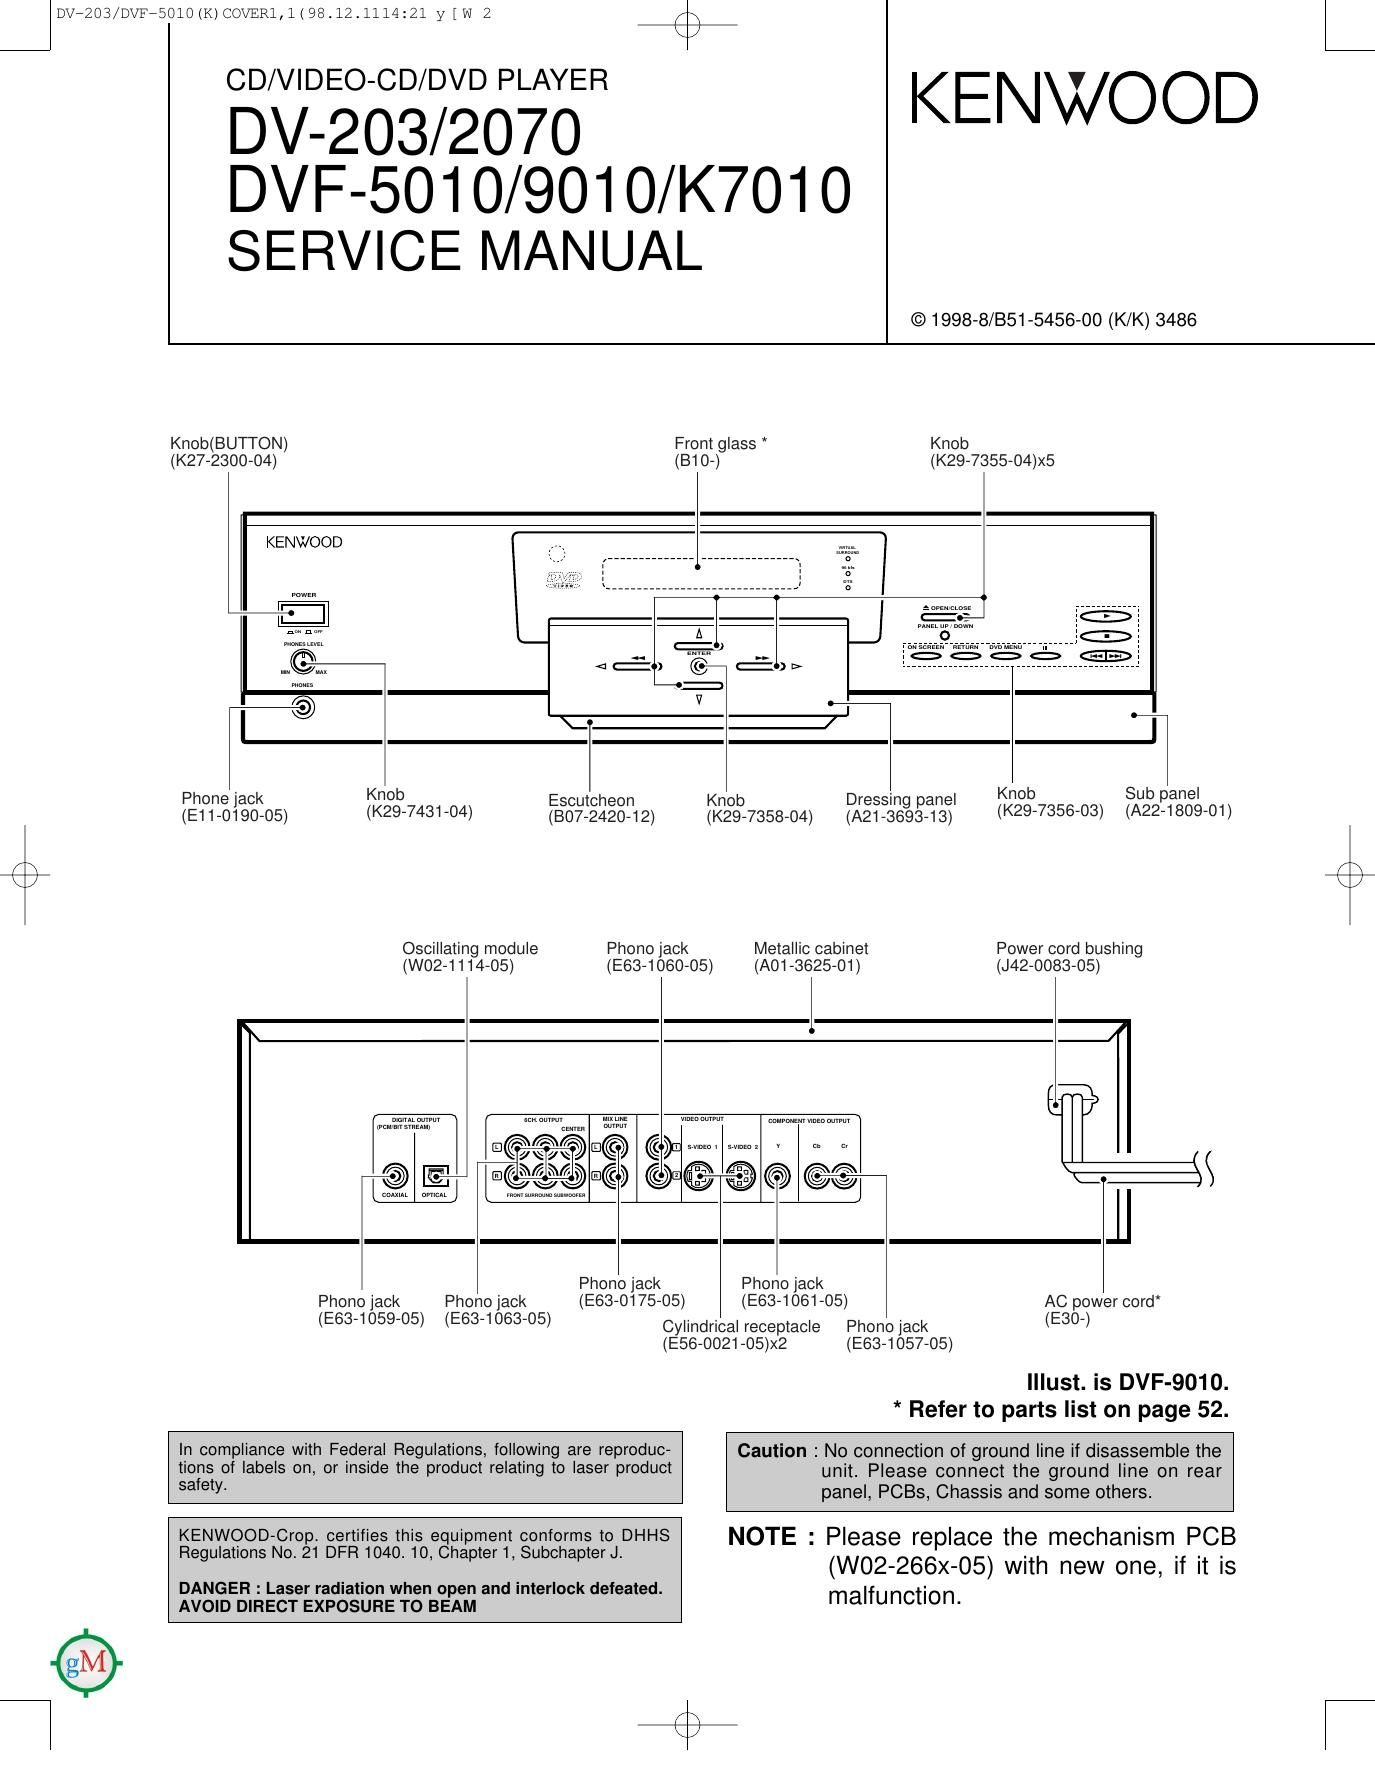 Kenwood DV 203 Service Manual